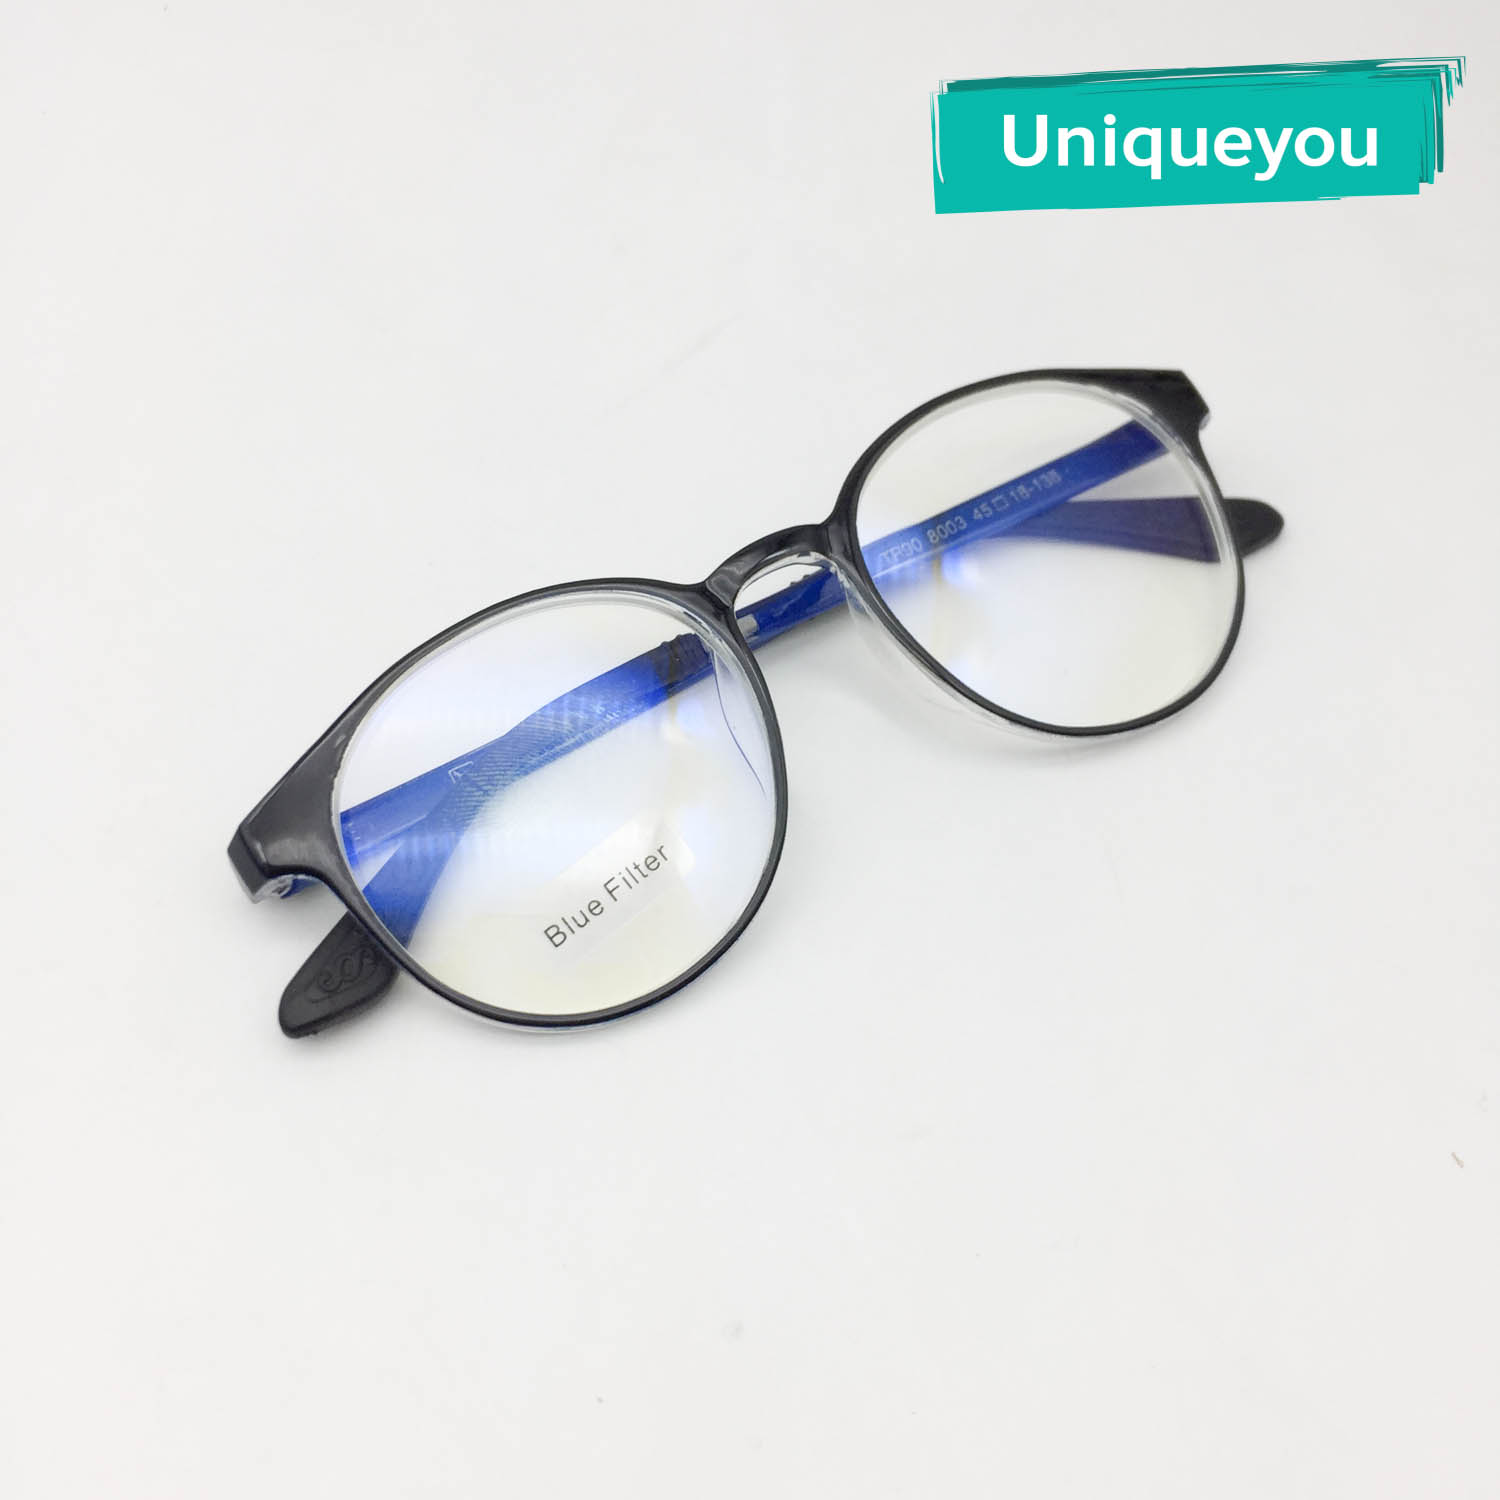 UniqueYou แว่นสายตาสั้น/ยาวเลนส์บลูบล๊อค Blue Filter พร้อมสายตา เลนส์ชัด น้ำหนักเบา ป้องกันแสงสีฟ้าที่มีโทษ ให้ความสบายตา